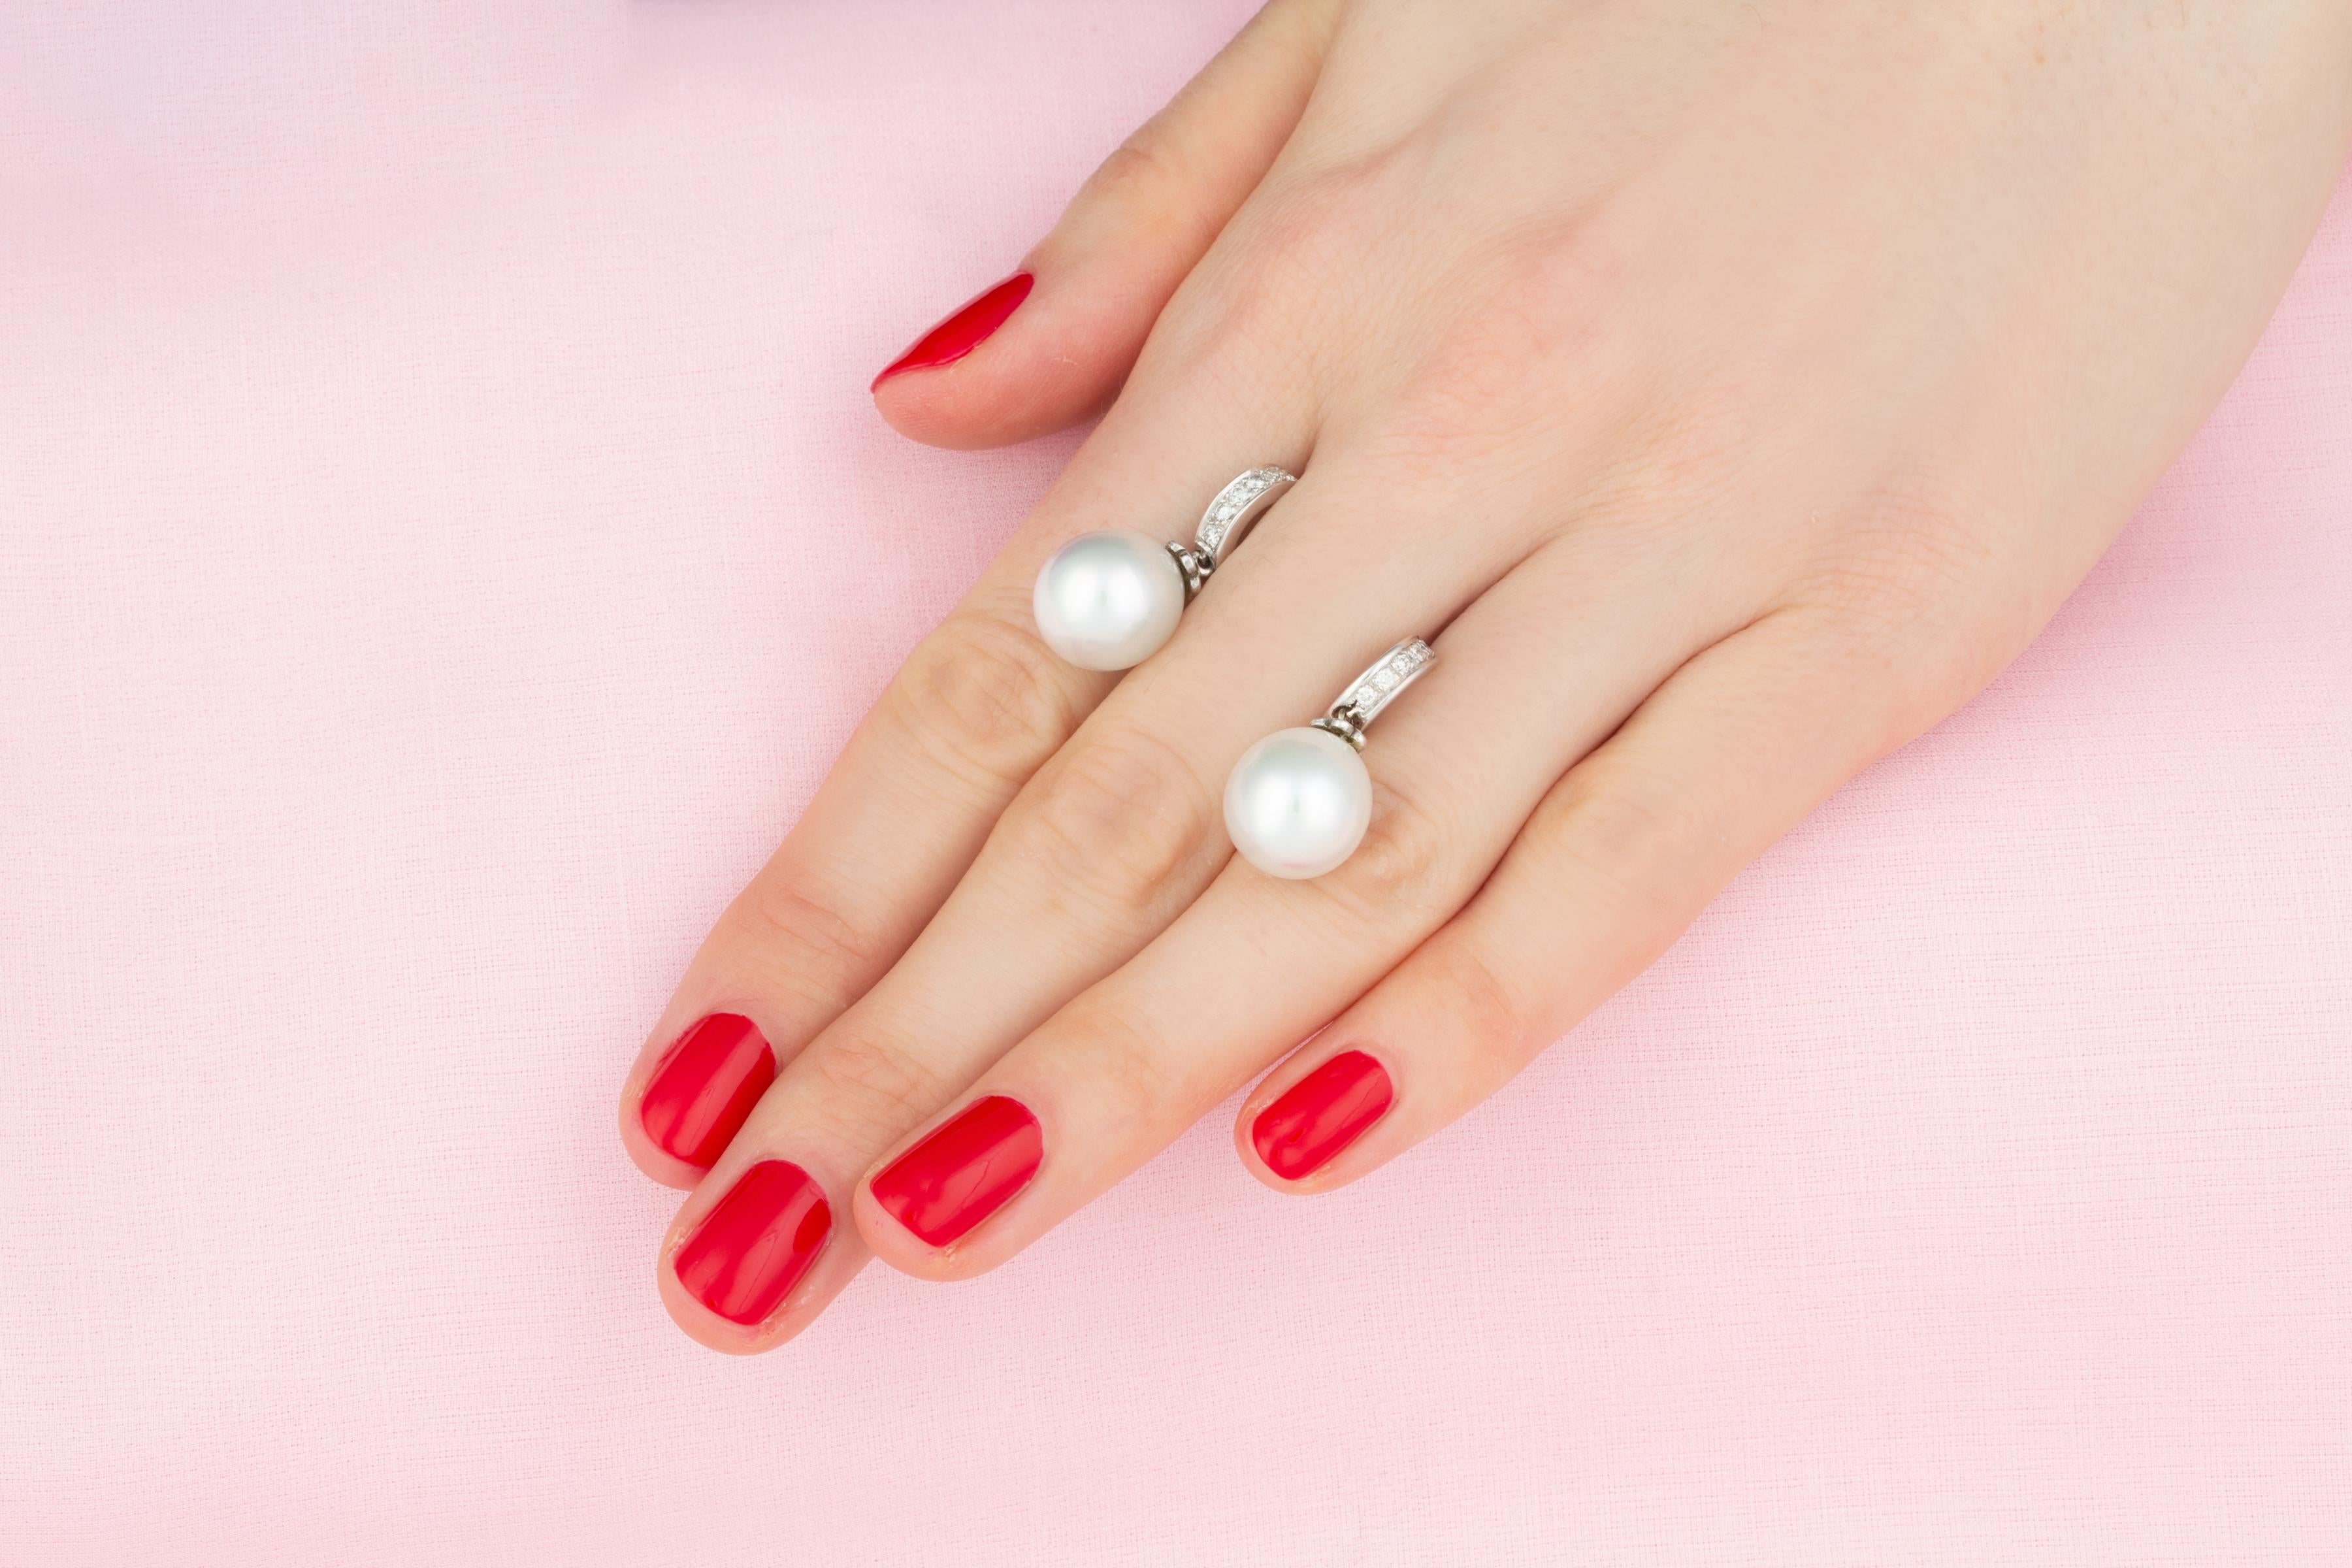 Les boucles d'oreilles pendantes en perles des mers du Sud et diamants sont composées de deux perles de 12 mm de diamètre, d'une belle qualité de nacre et d'un éclat magnifique.
Les perles sont suspendues à deux anneaux sertis de diamants ronds de